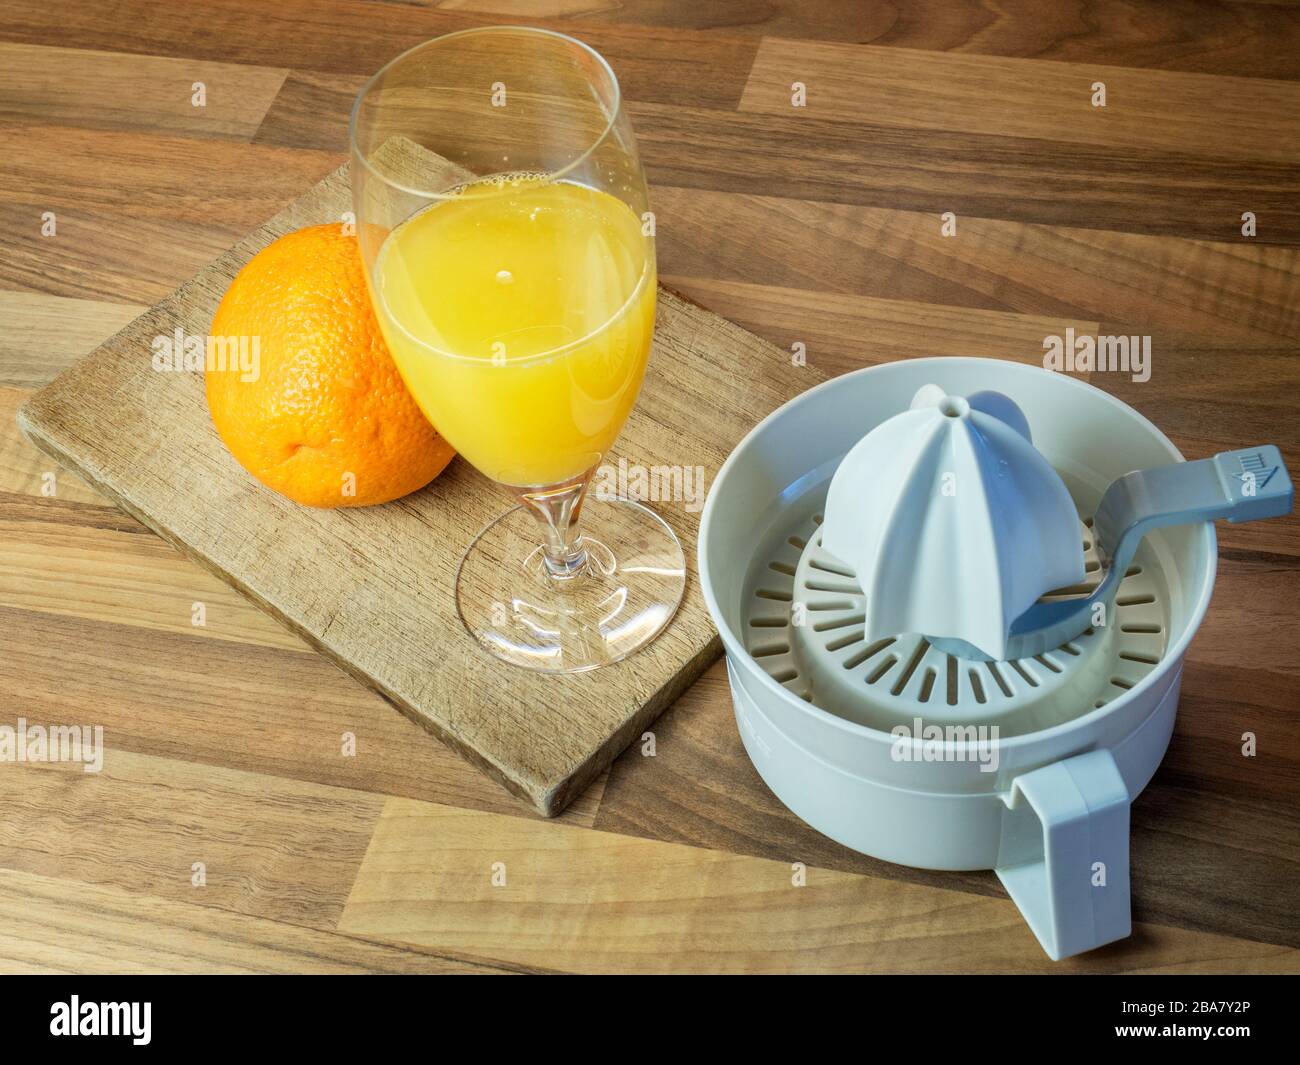 Spremuta d'arancia fresca con un'arancia intera su un tagliere e una spremuta d'arancia su un piano di lavoro della cucina a blocchi di legno Foto Stock